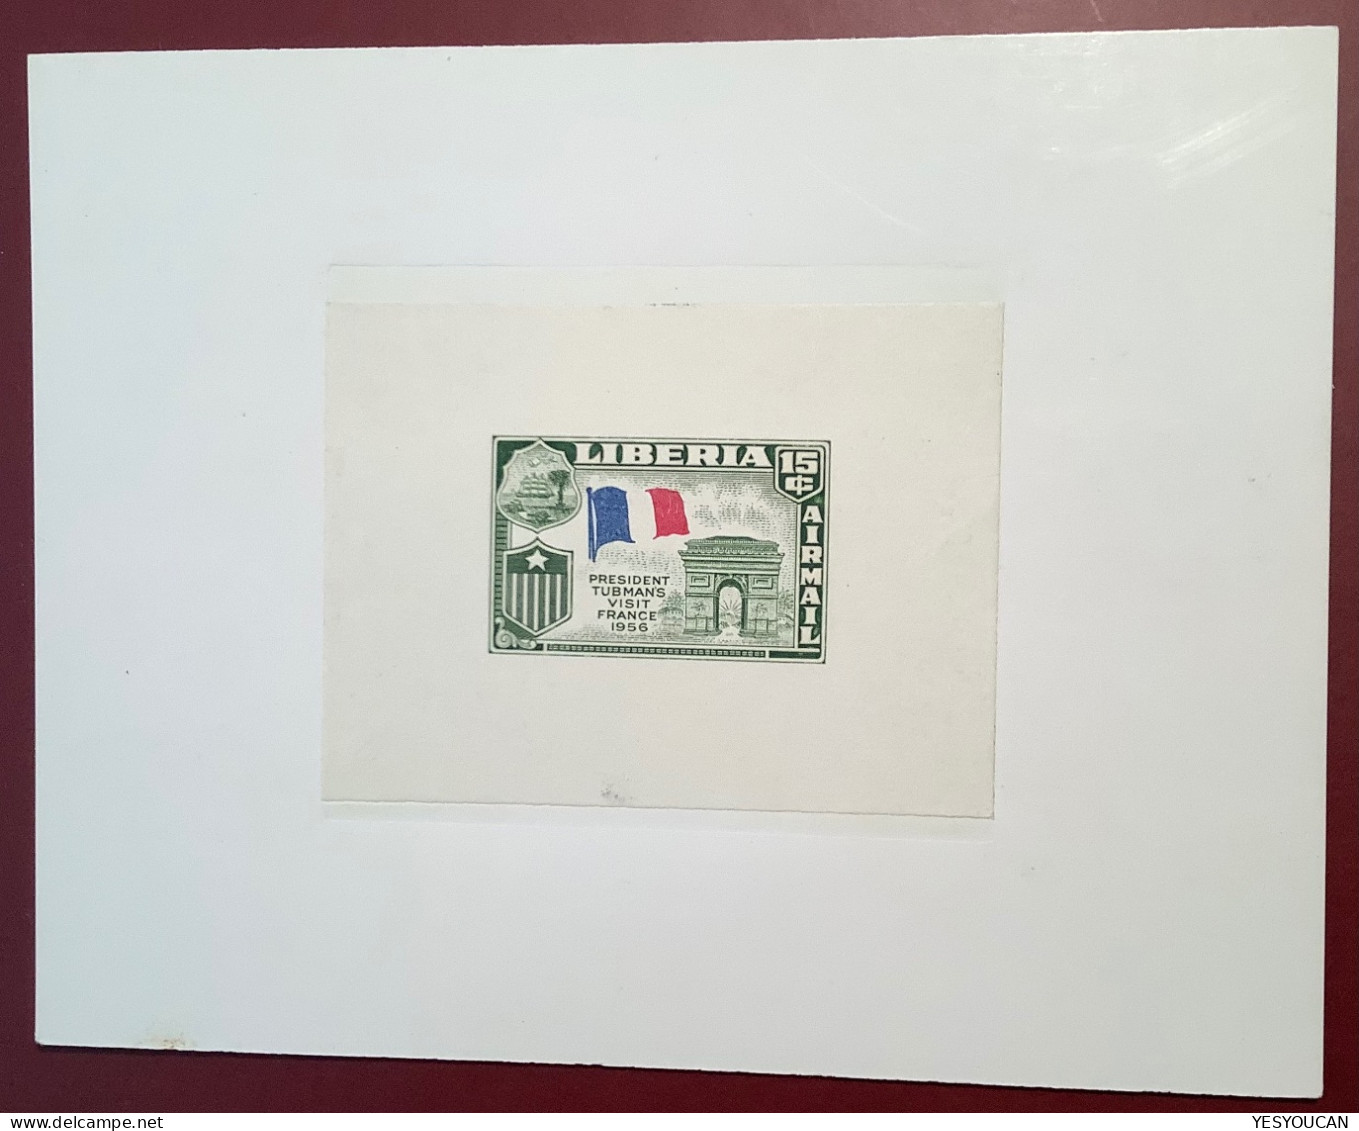 Liberia1958 Die Proof President Tubman’s Visit France1956 (architecture Arc De Triomphe Paris Flag Drapeau Napoléon - Liberia